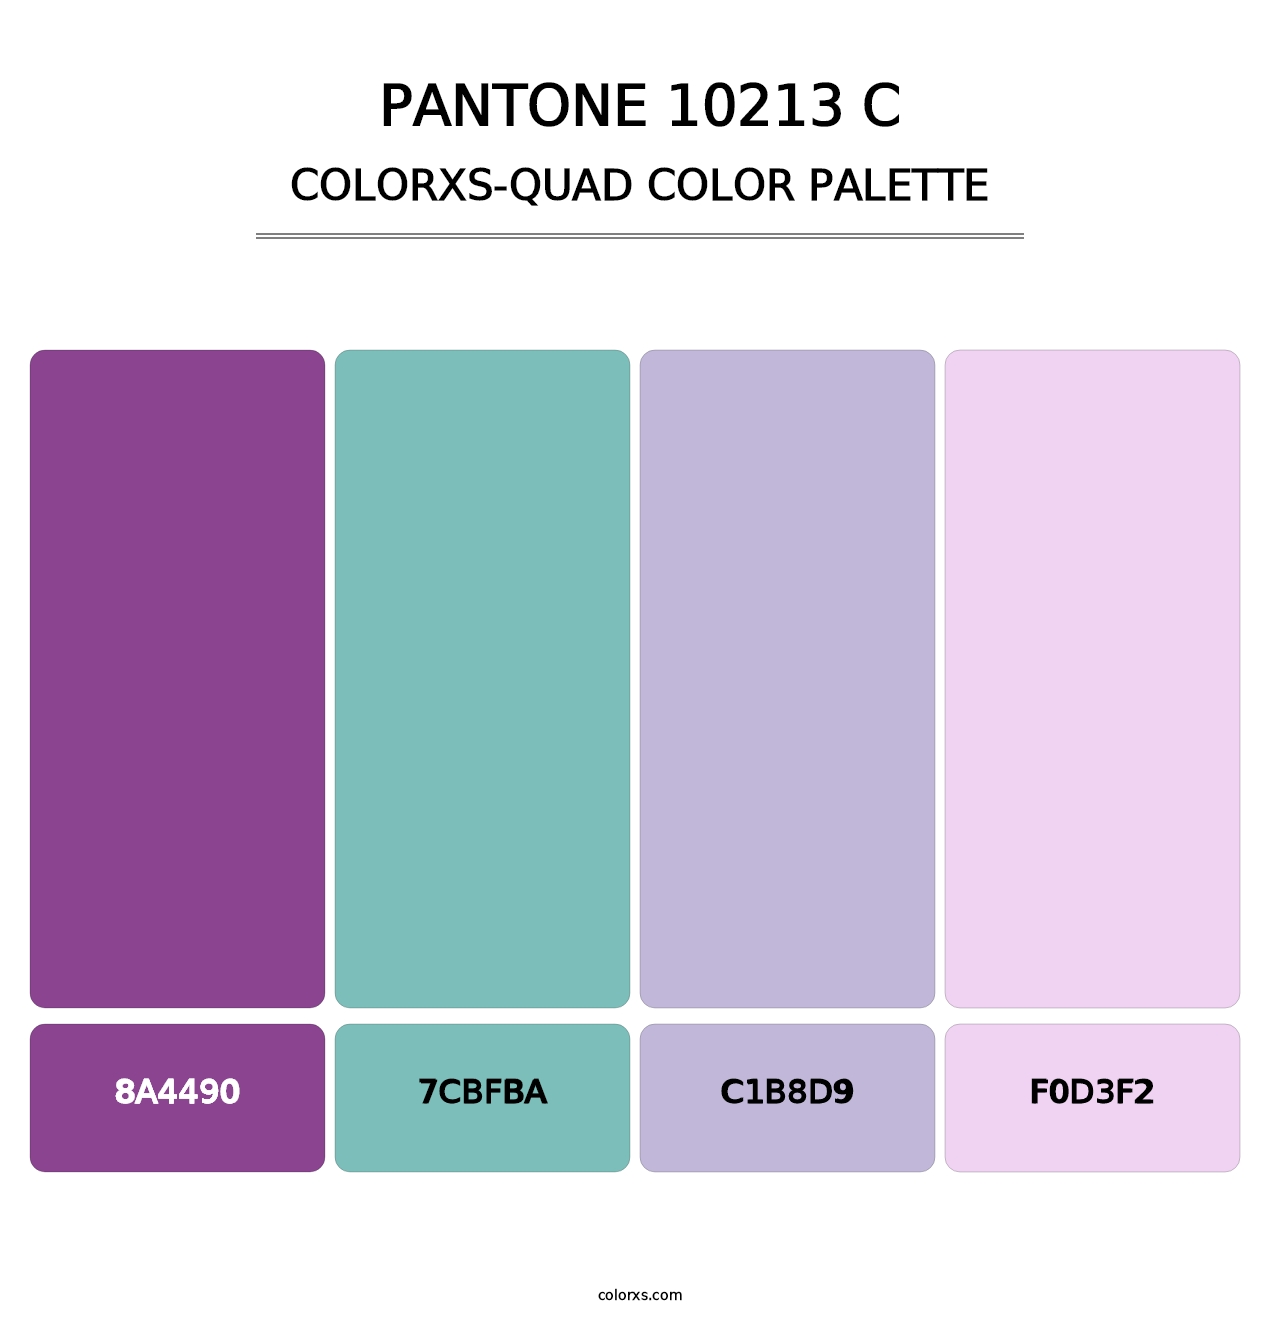 PANTONE 10213 C - Colorxs Quad Palette